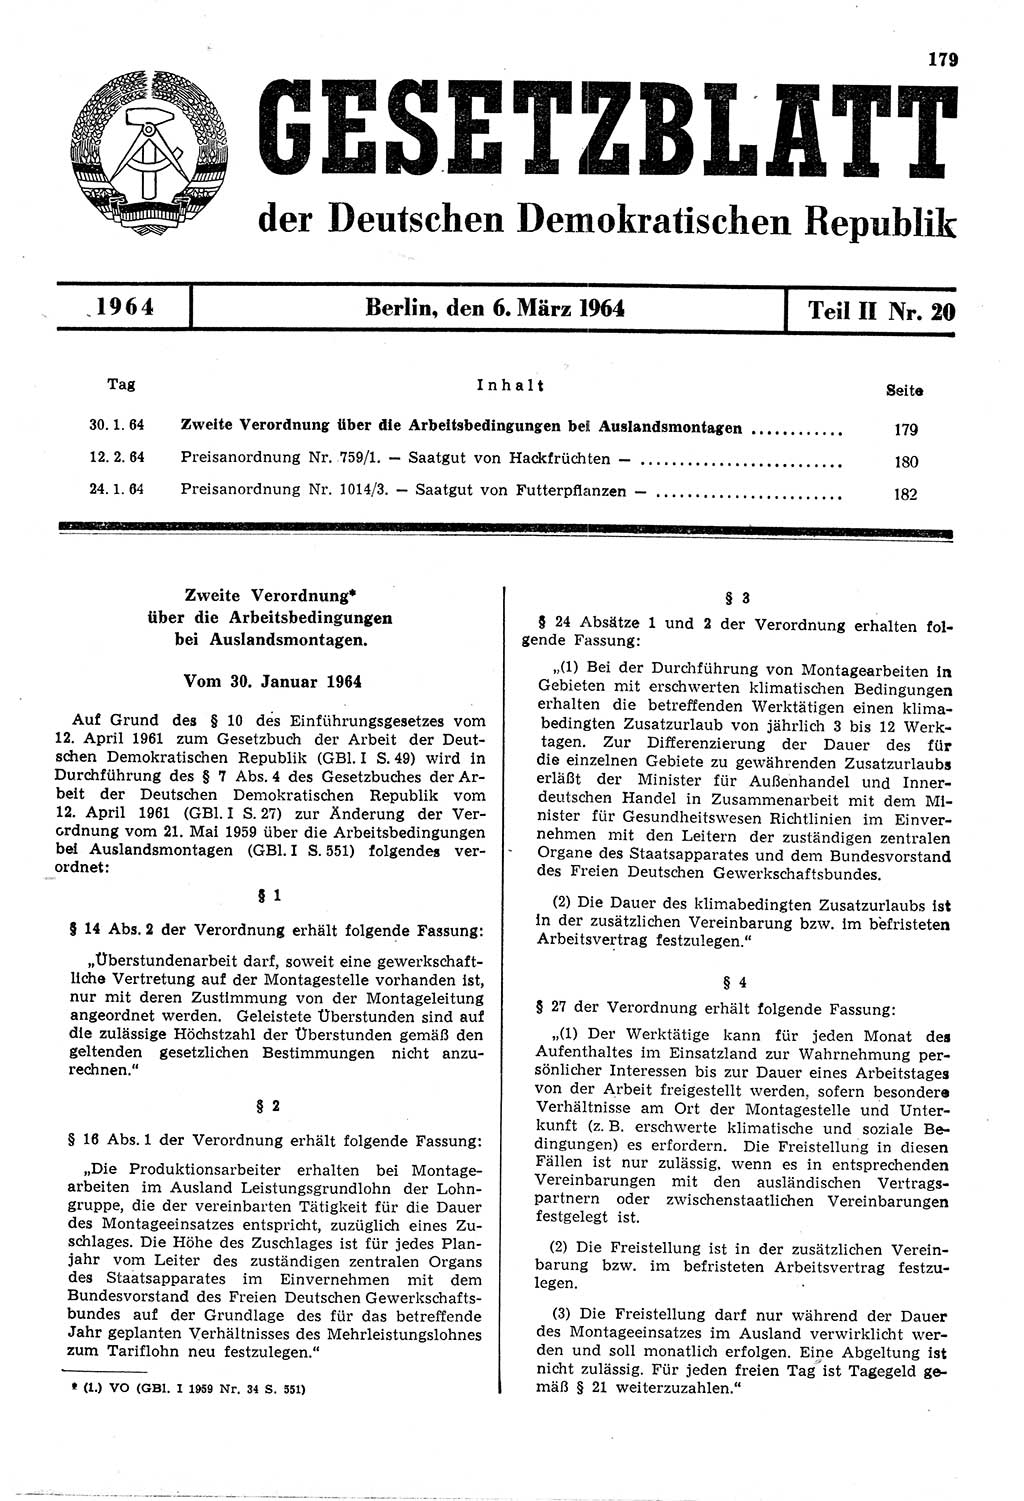 Gesetzblatt (GBl.) der Deutschen Demokratischen Republik (DDR) Teil ⅠⅠ 1964, Seite 179 (GBl. DDR ⅠⅠ 1964, S. 179)